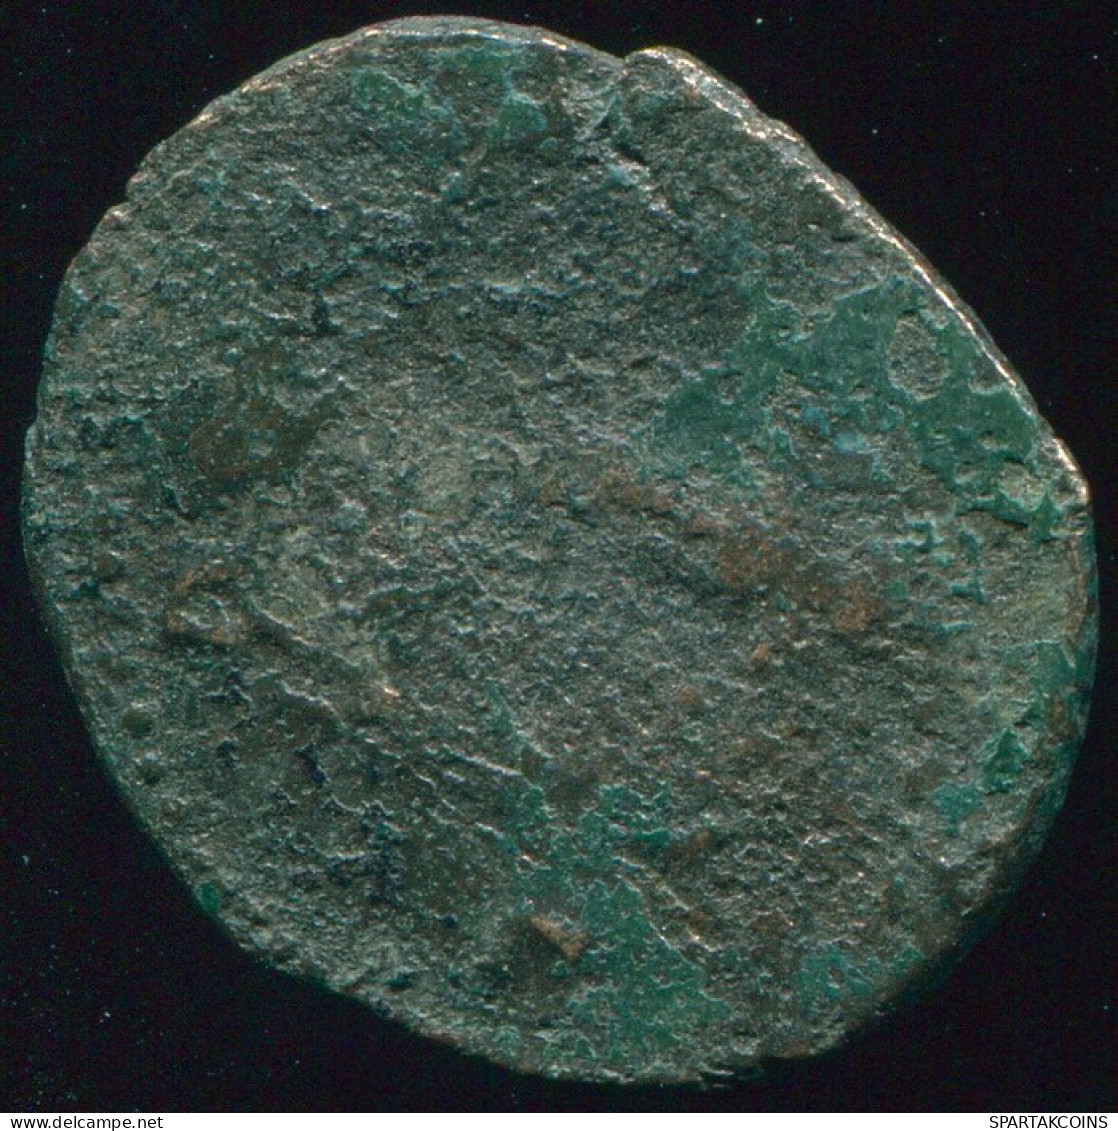 RÖMISCHE PROVINZMÜNZE Roman Provincial Ancient Coin 2.55g/19.90mm #RPR1013.10.D.A - Province